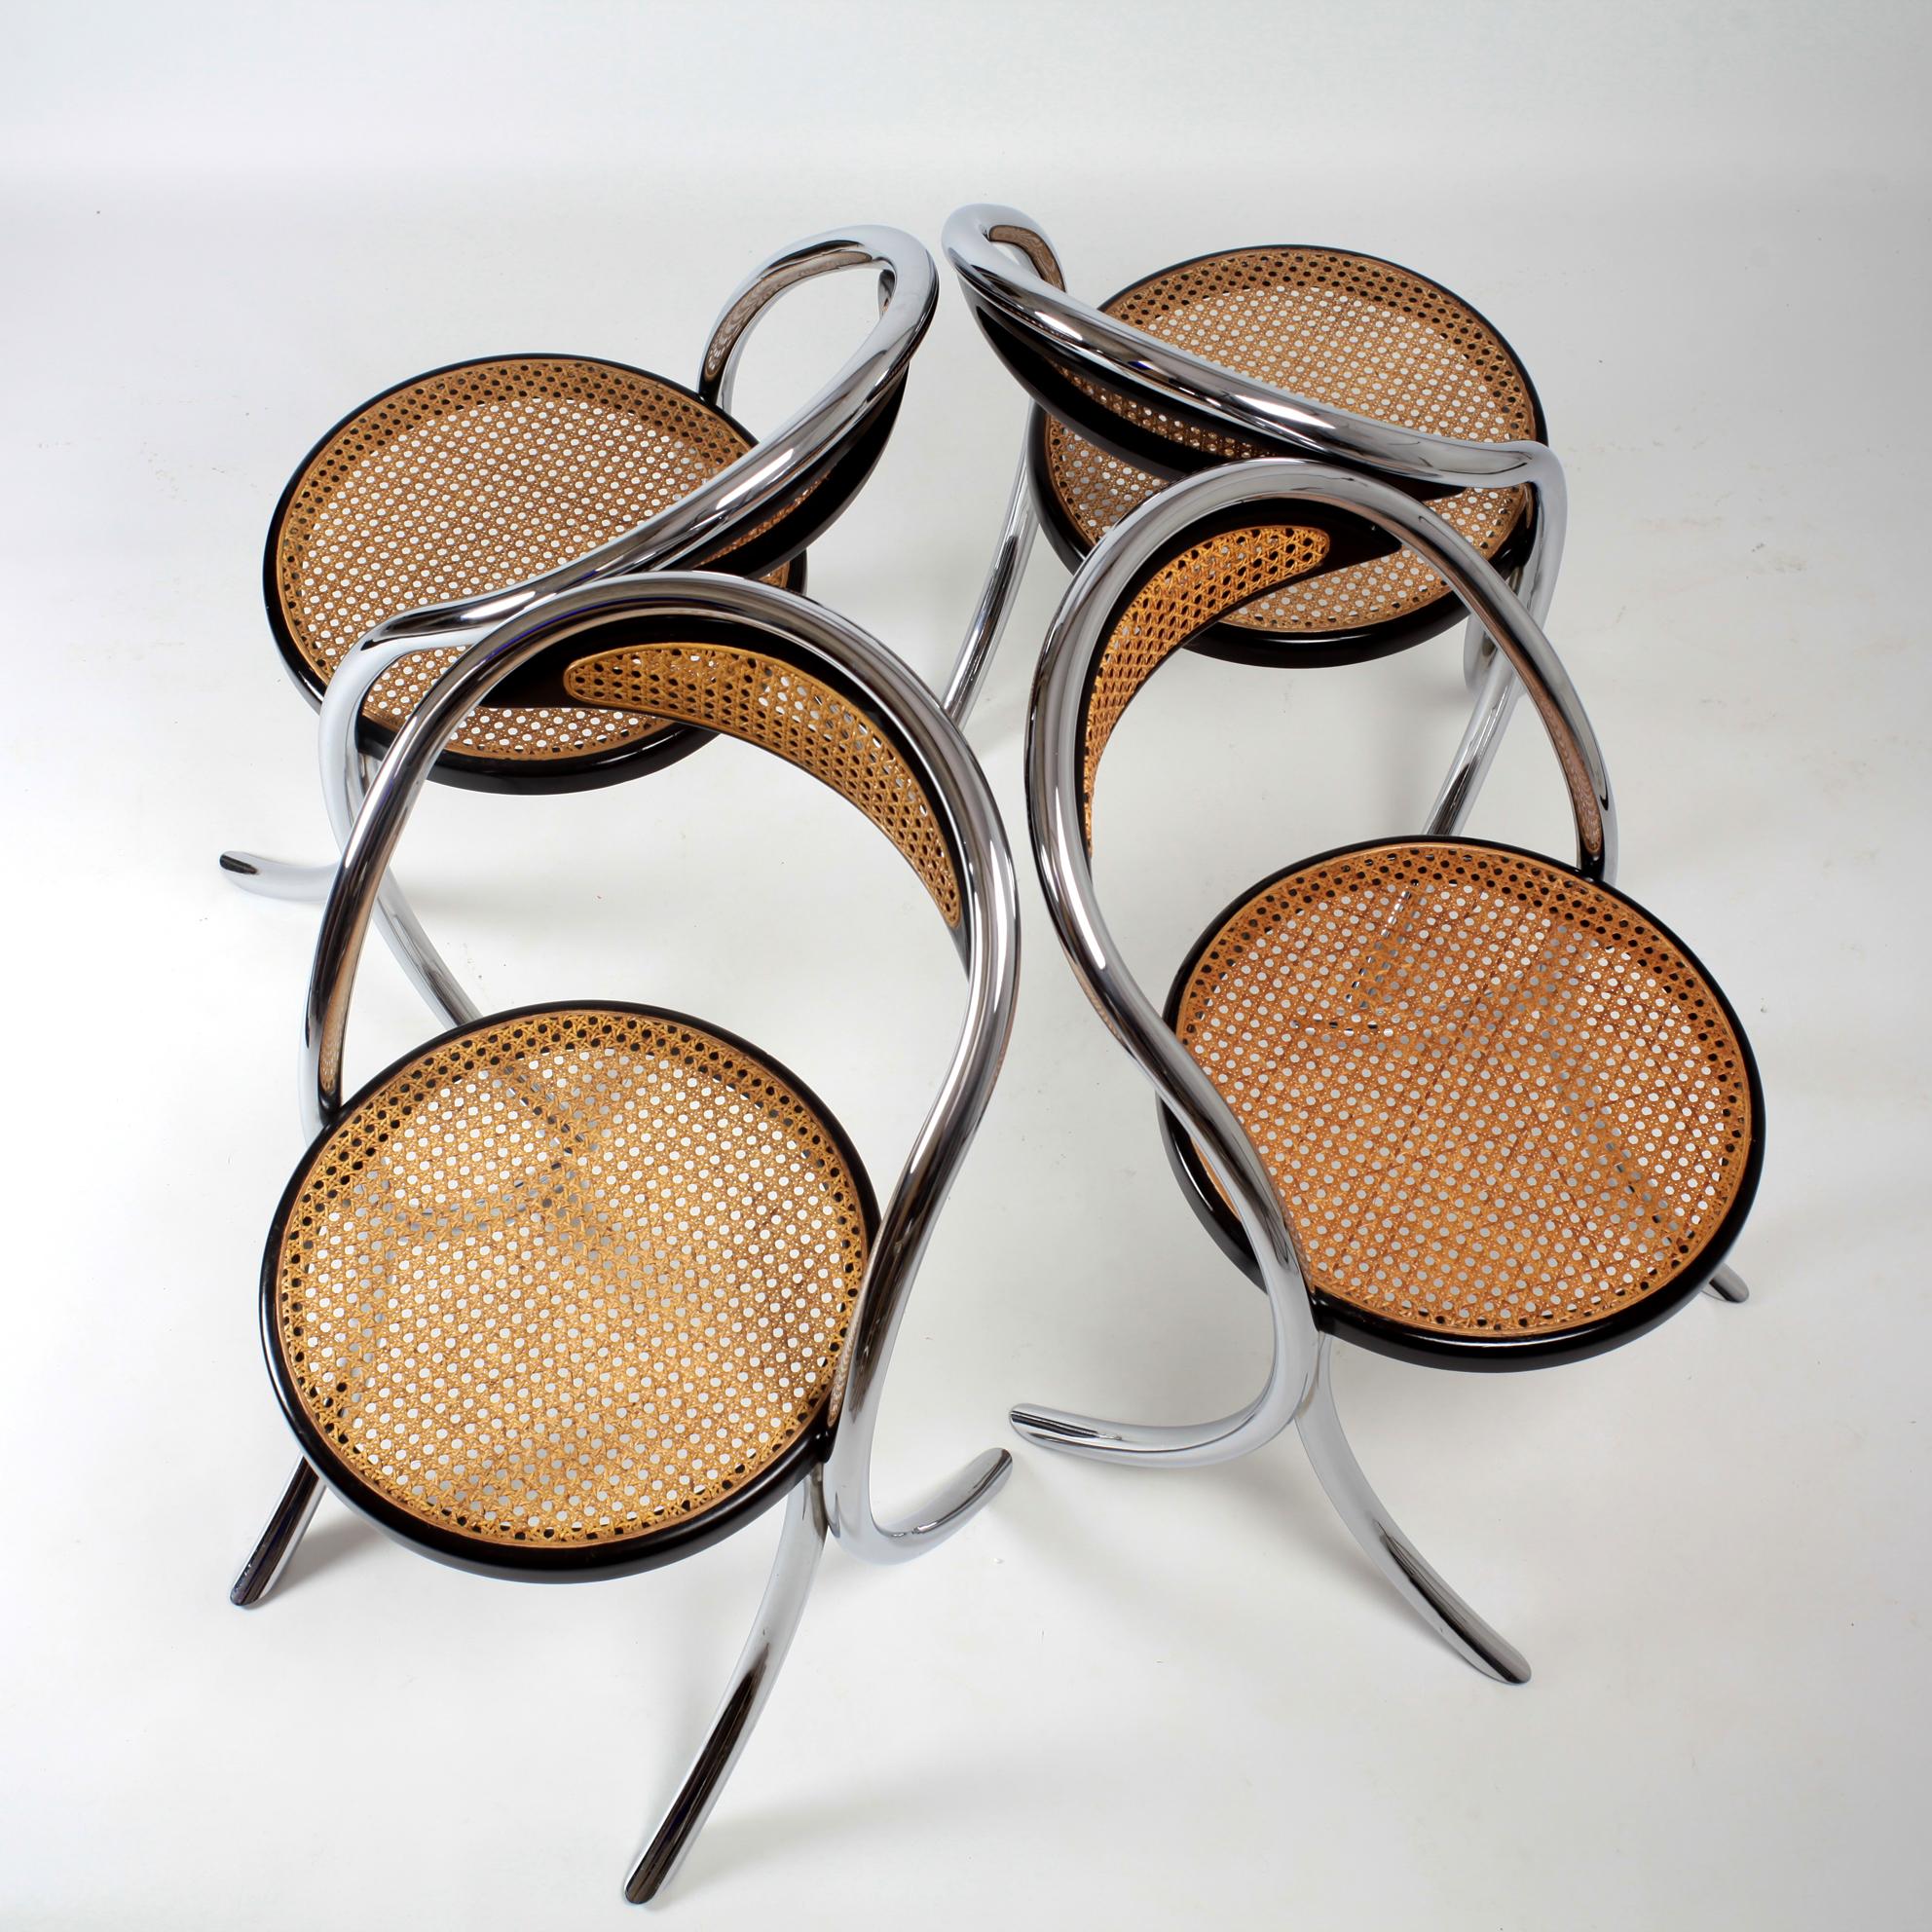 Seltene und originelle italienische Stühle in geschwungener Form aus den 1970er Jahren mit schwarz lackiertem Holz, Sitz und Rückenlehne aus Schilfrohr und verchromter Struktur. Minimalistisch und solide. In sehr gutem Vintage-Zustand.